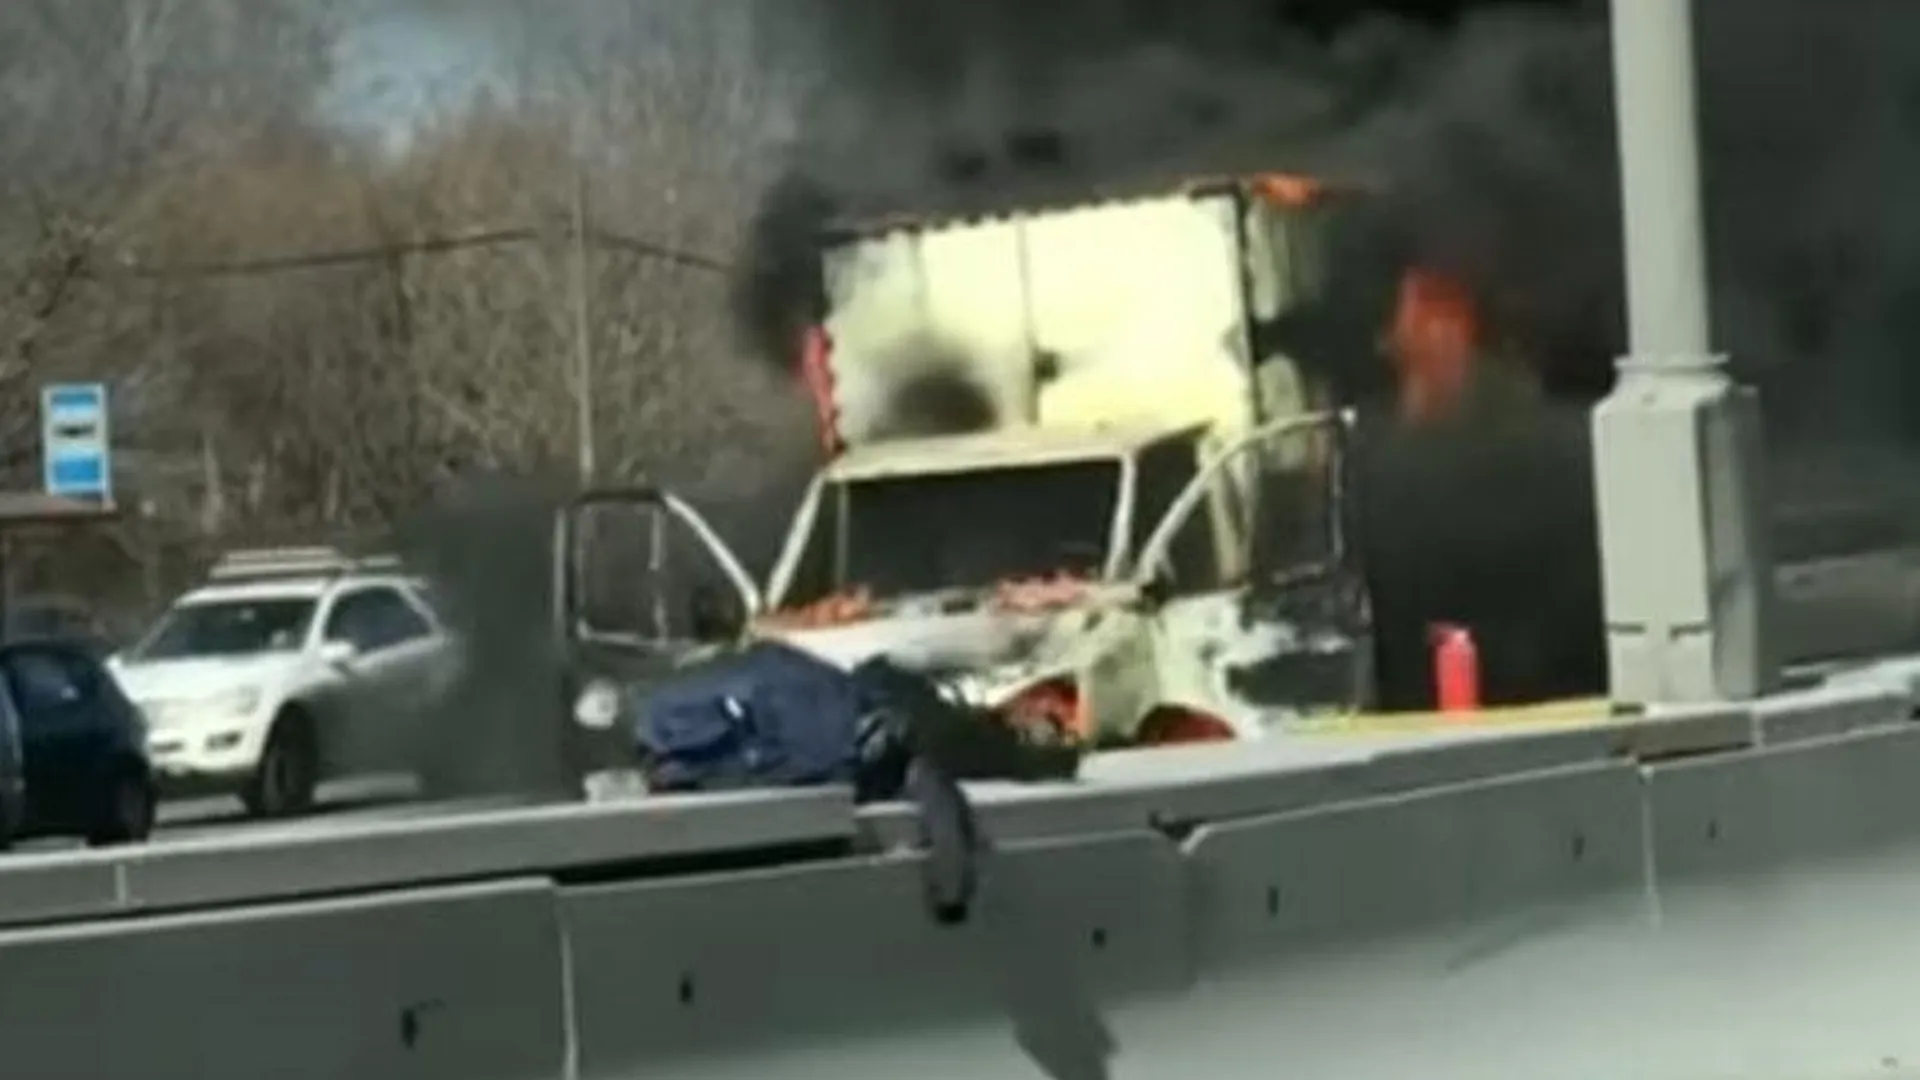 В Котельниках загорелся грузовик во время движения